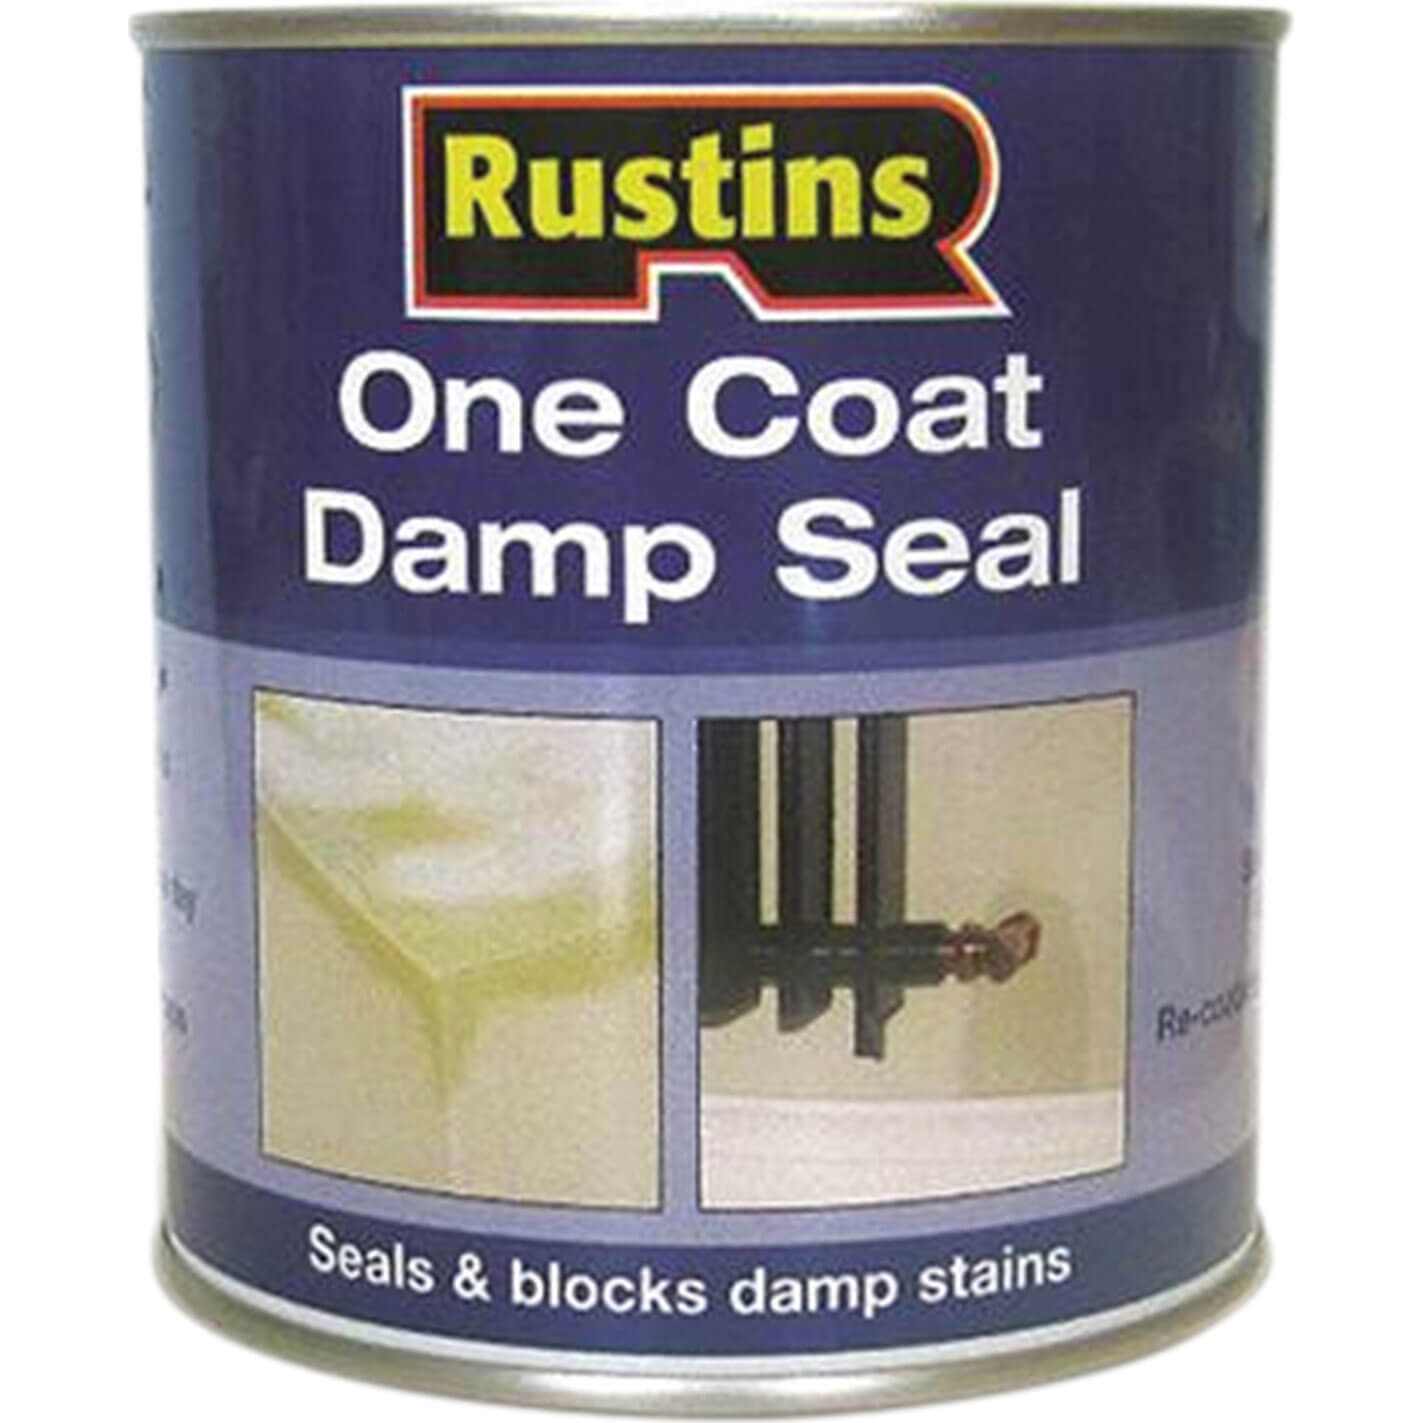 Image of Rustins One Coat Damp Seal 1l